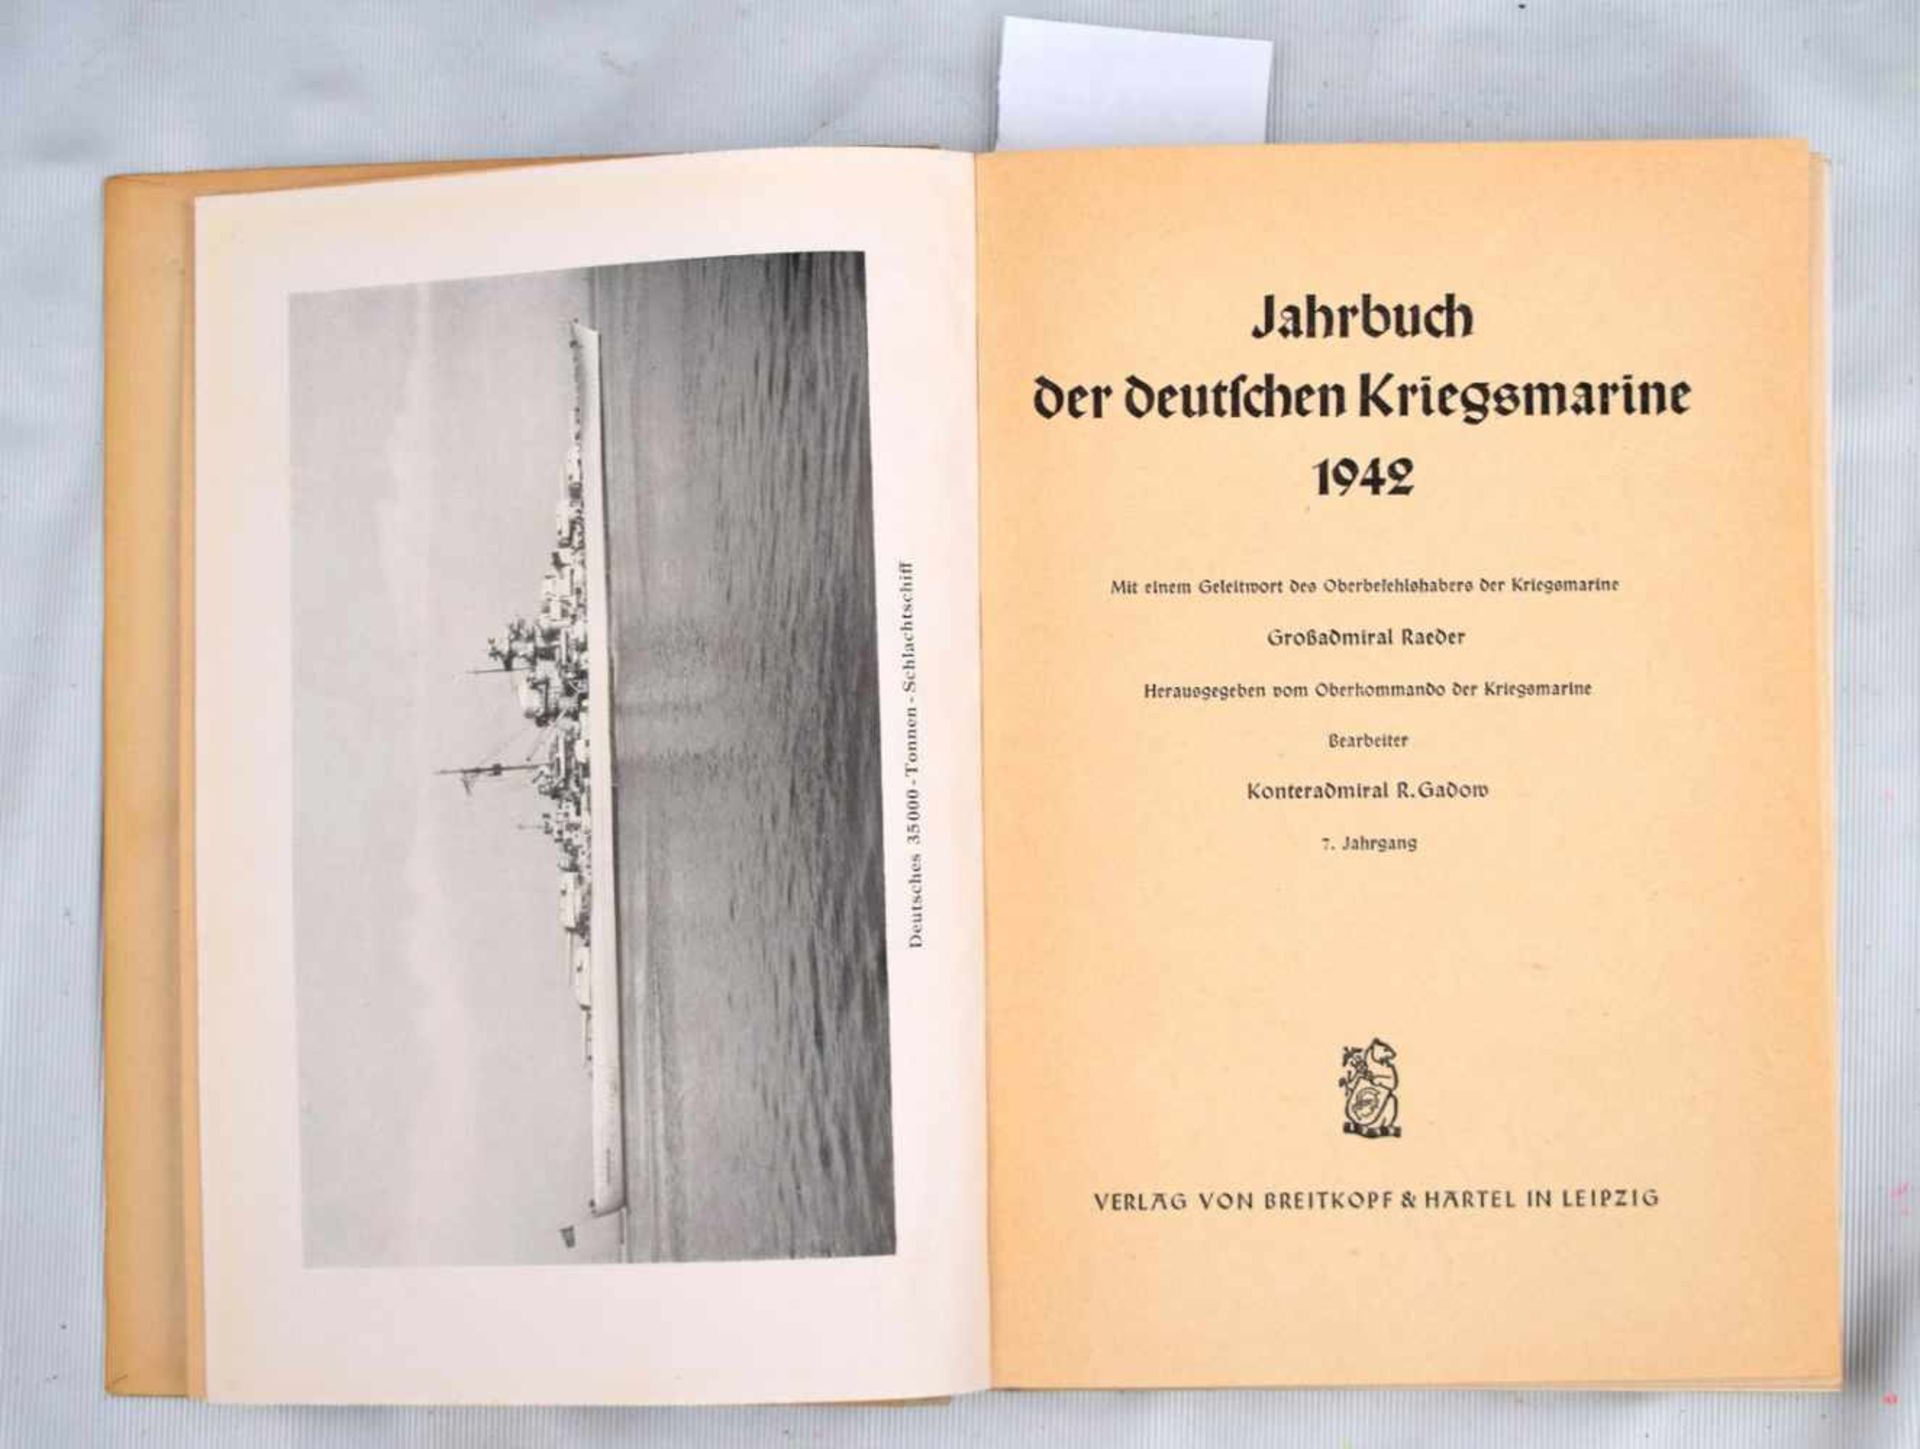 Jahrbuch der deutschen Kriegsmarine1942